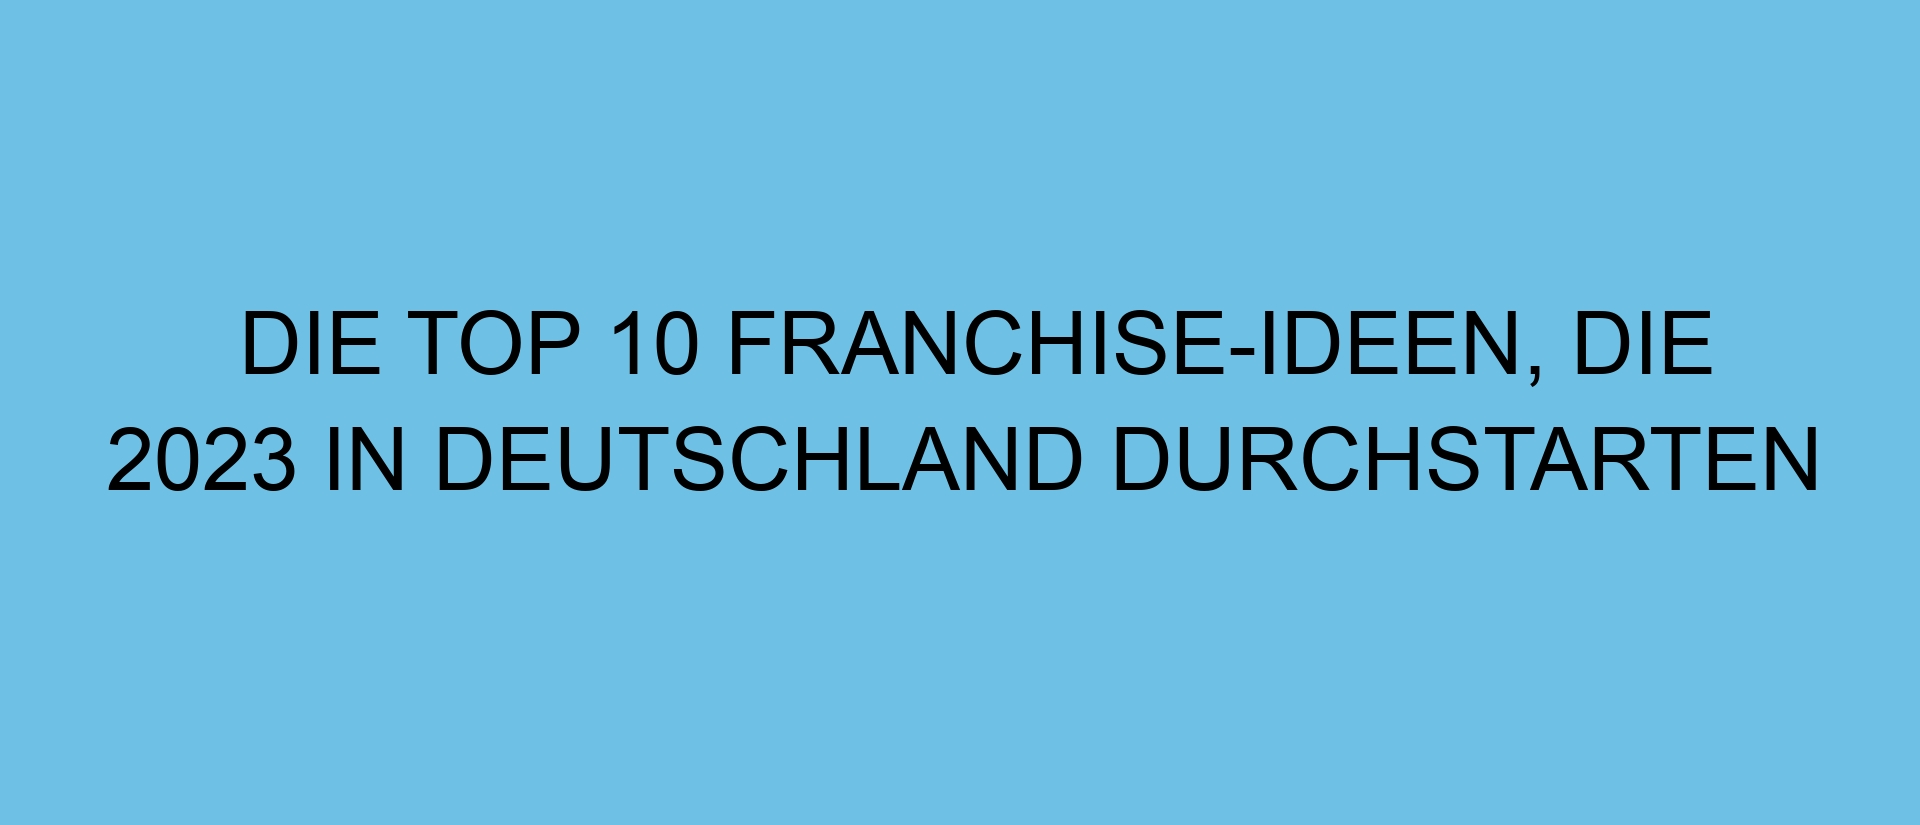 Die Top 10 Franchise-Ideen, die 2023 in Deutschland durchstarten